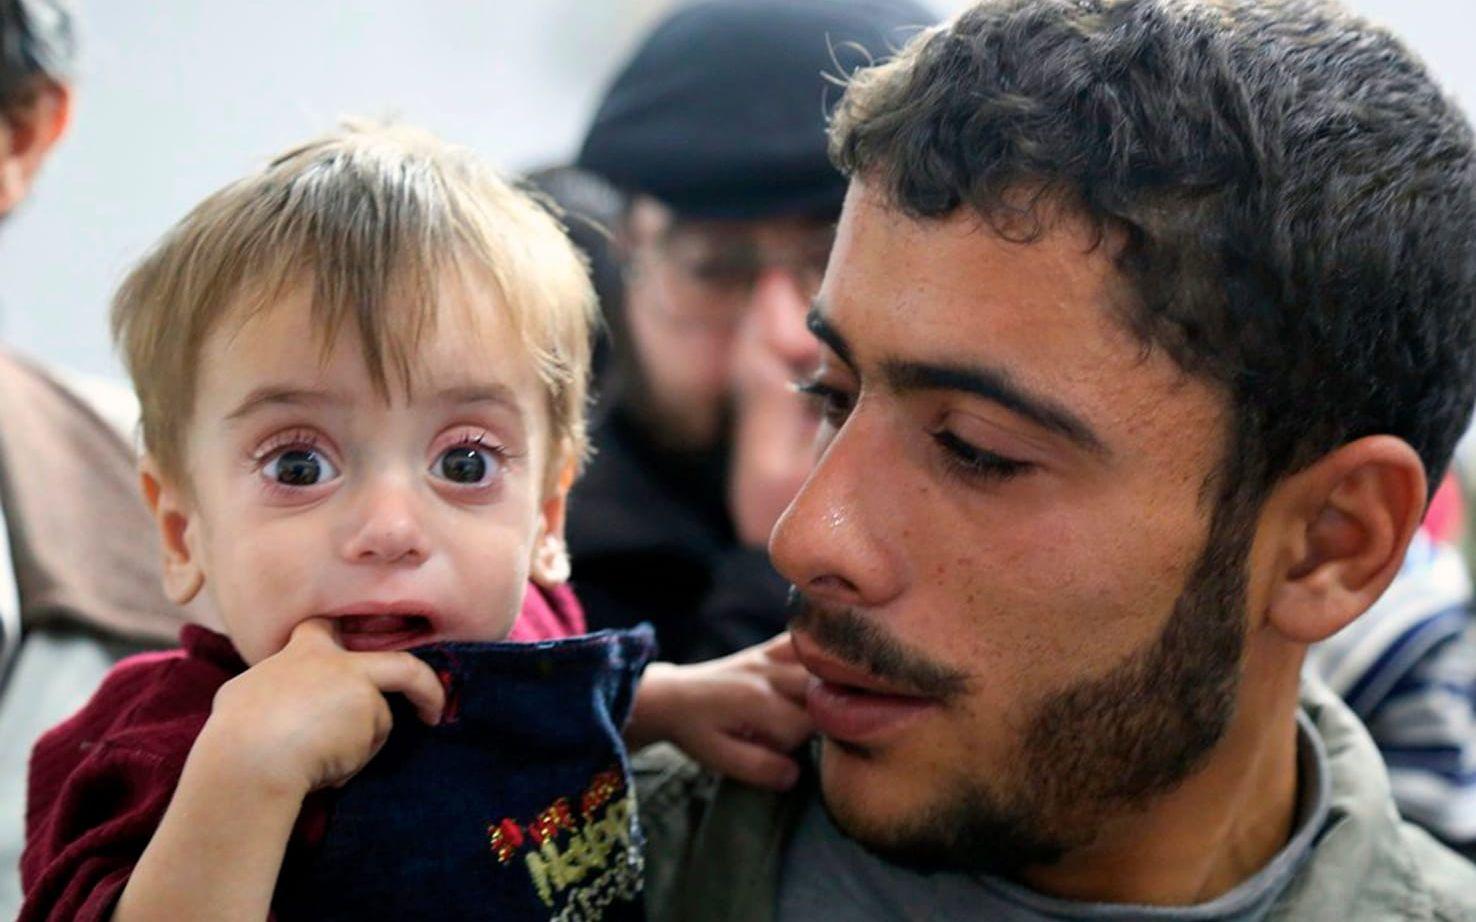 Många barn i Ghouta lider av undernäring, enligt Världslivsmedelsprogrammet WFP